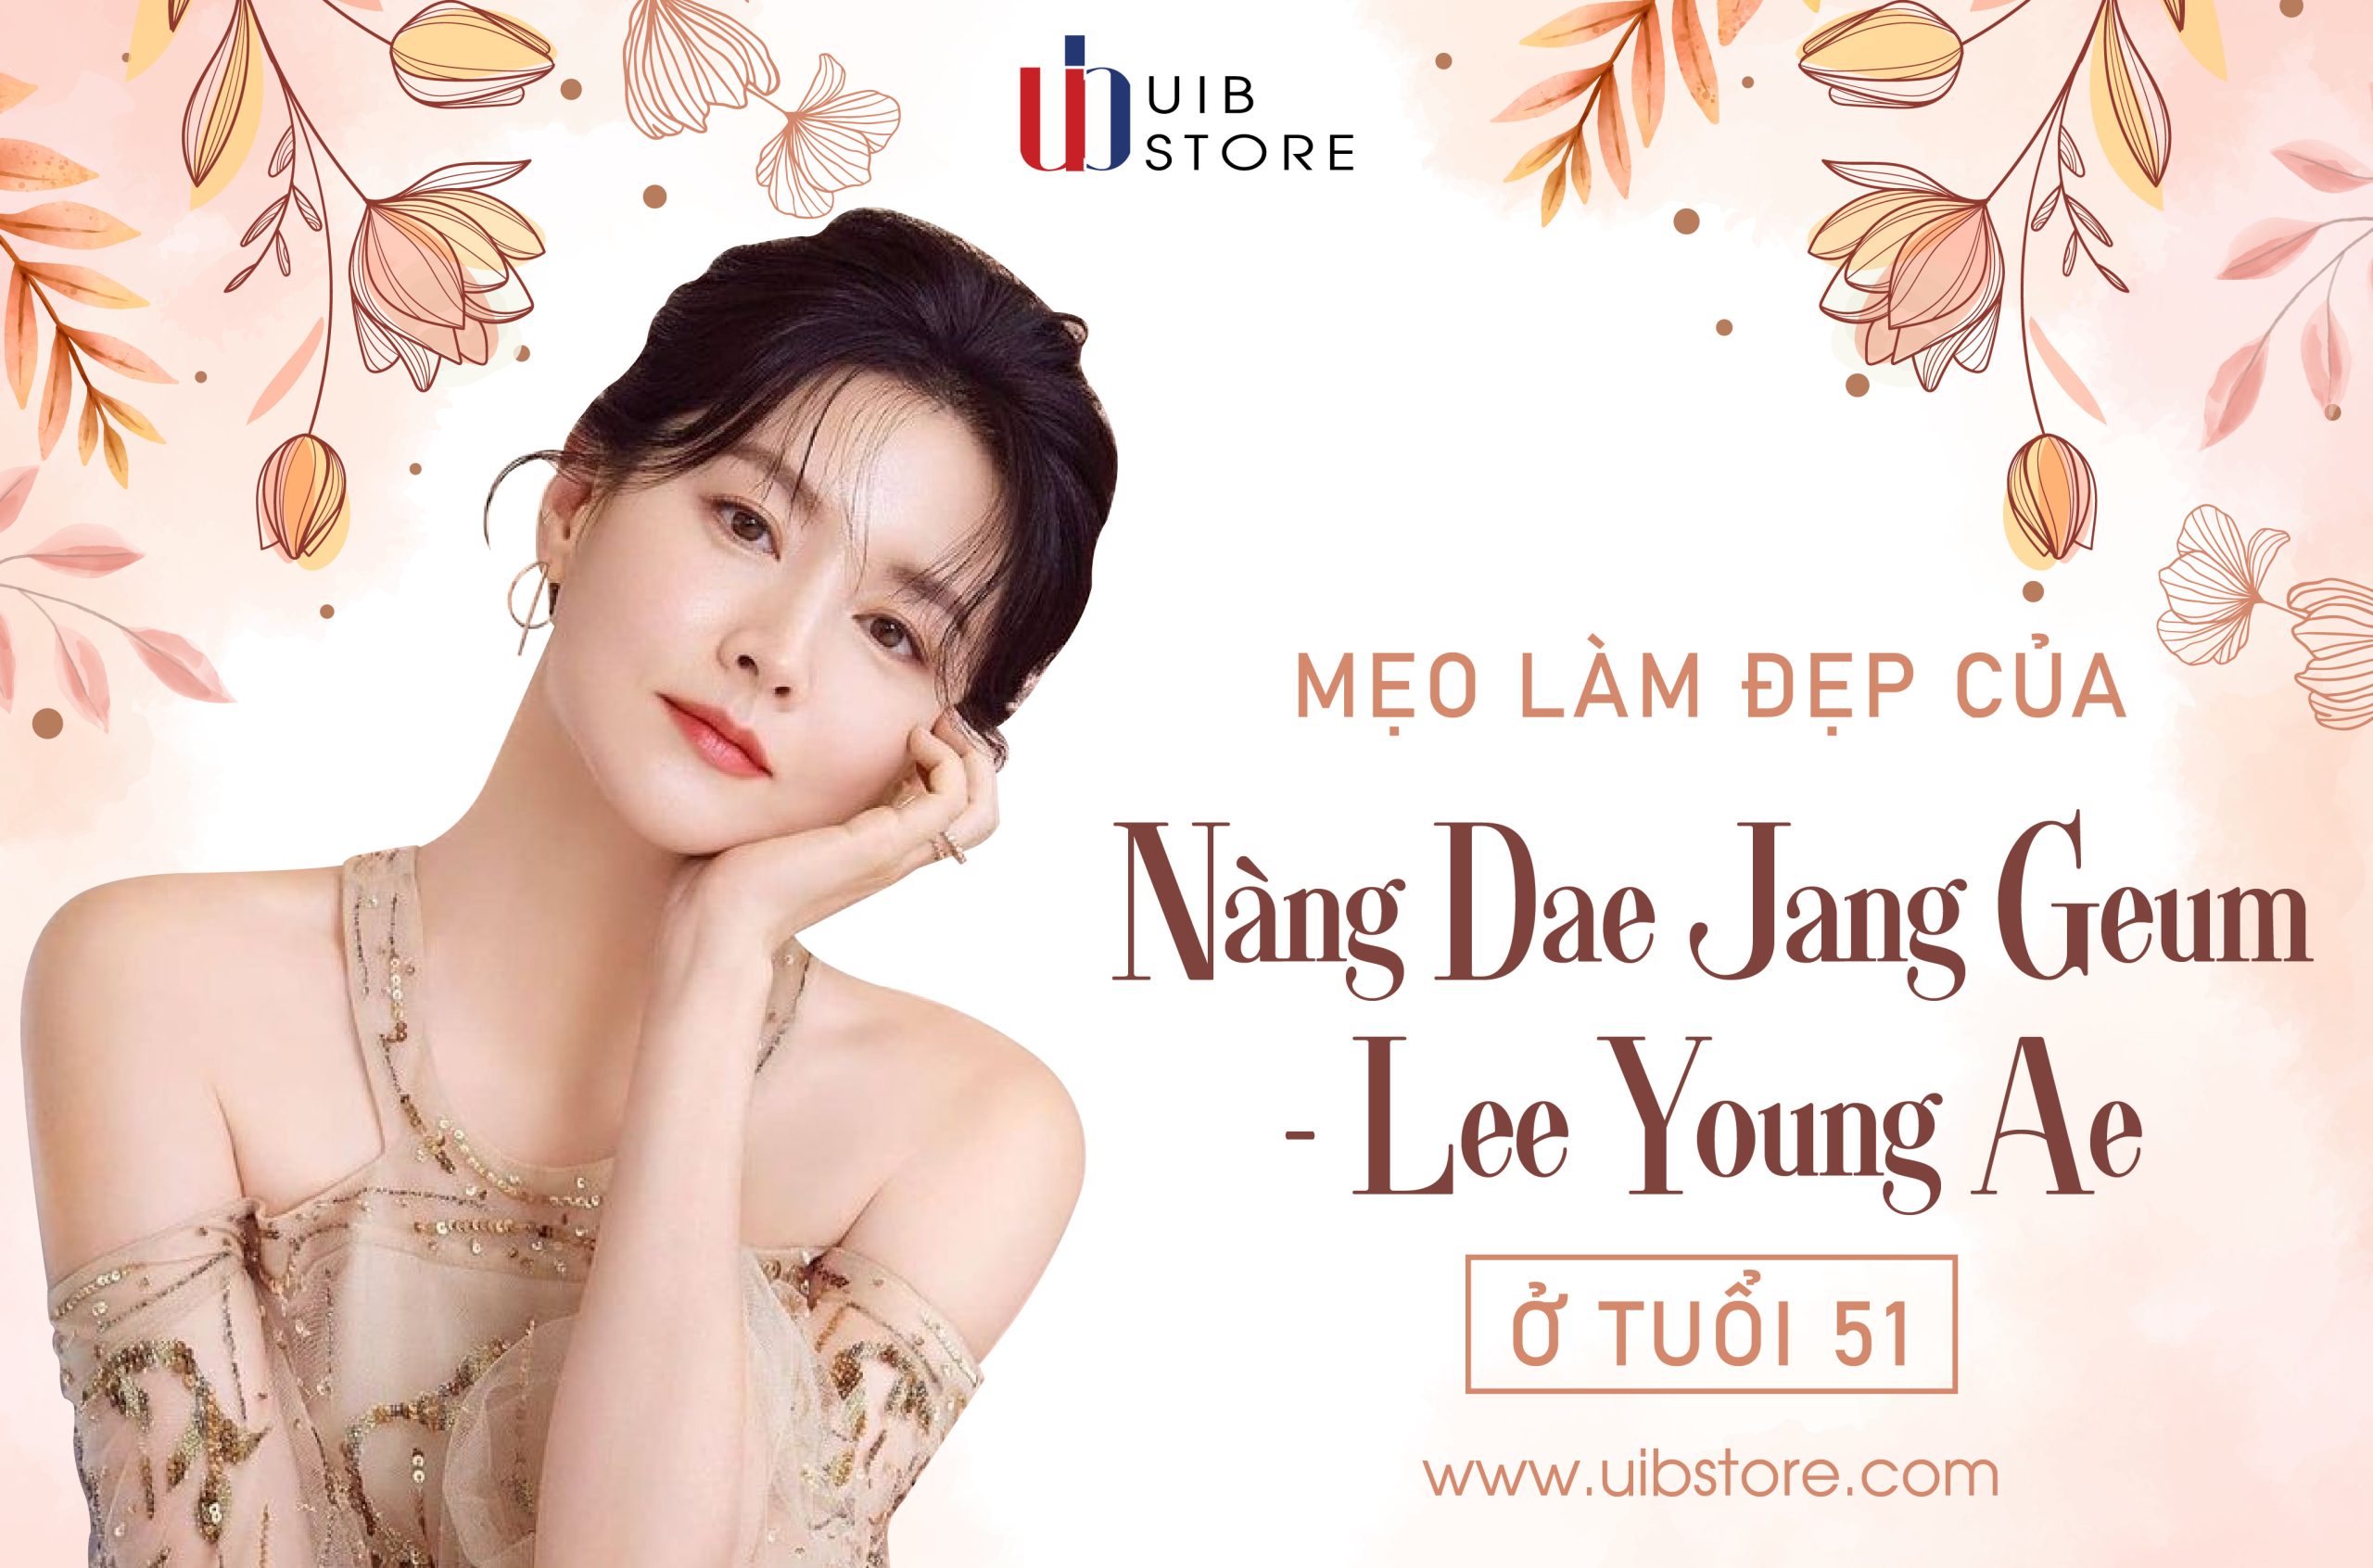 Bí quyết giữ gìn sắc đẹp của diễn viên chính phim Nàng Dae Jang Geum - Lee Young Ae ở tuổi 51 - UIBStore